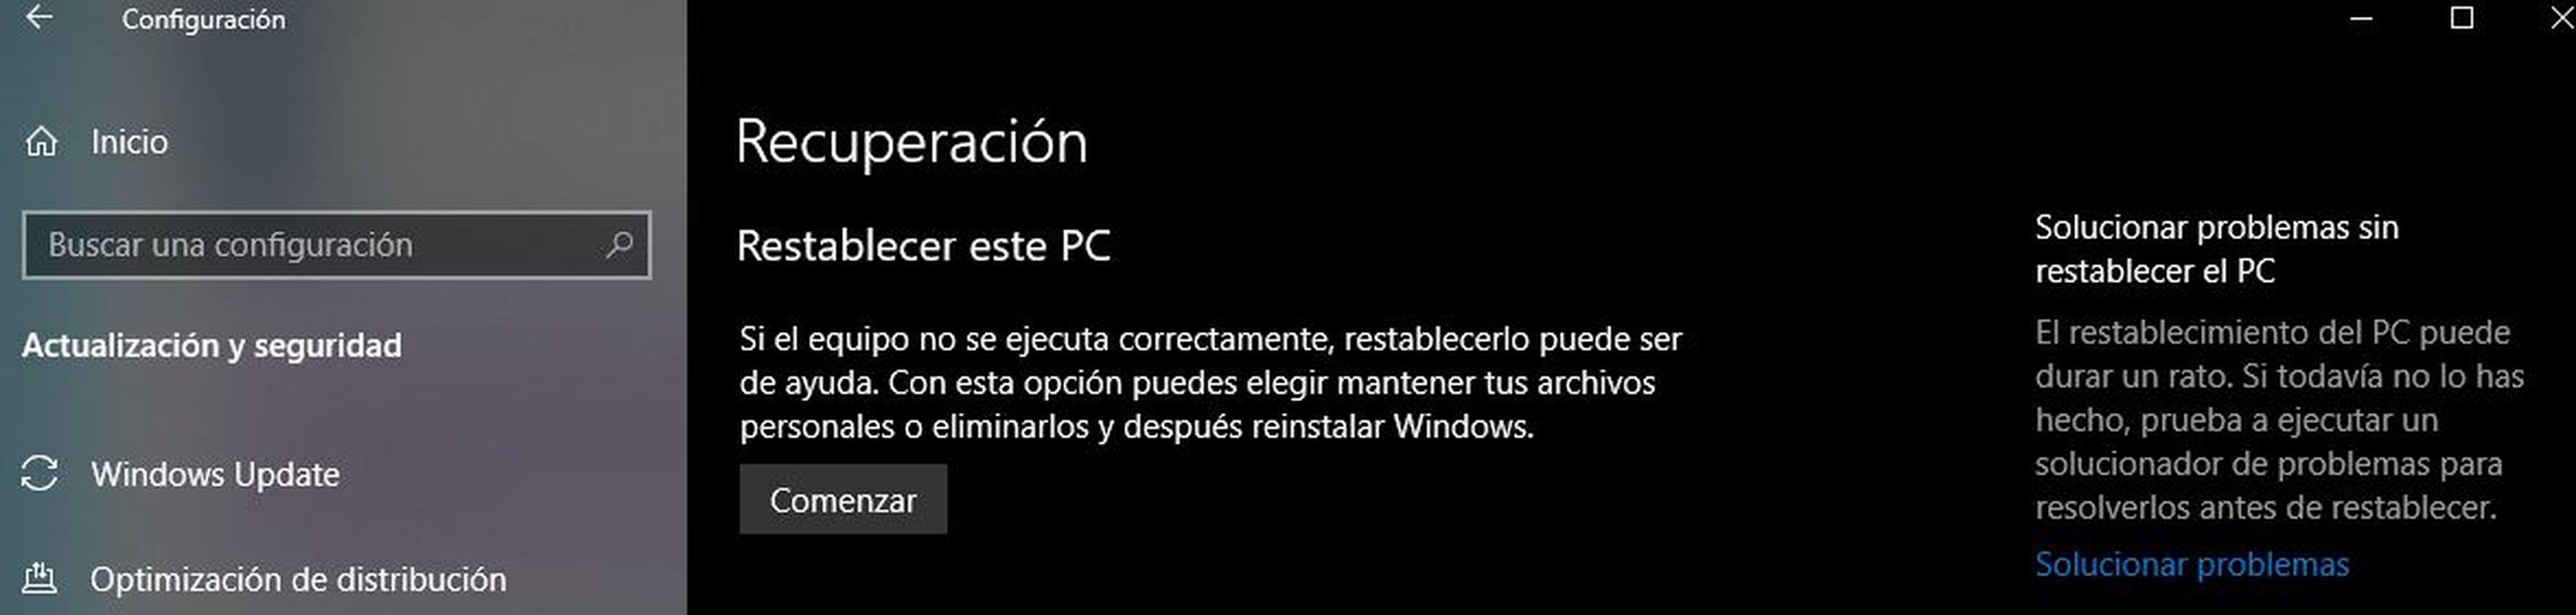 Instalación limpia Windows 10